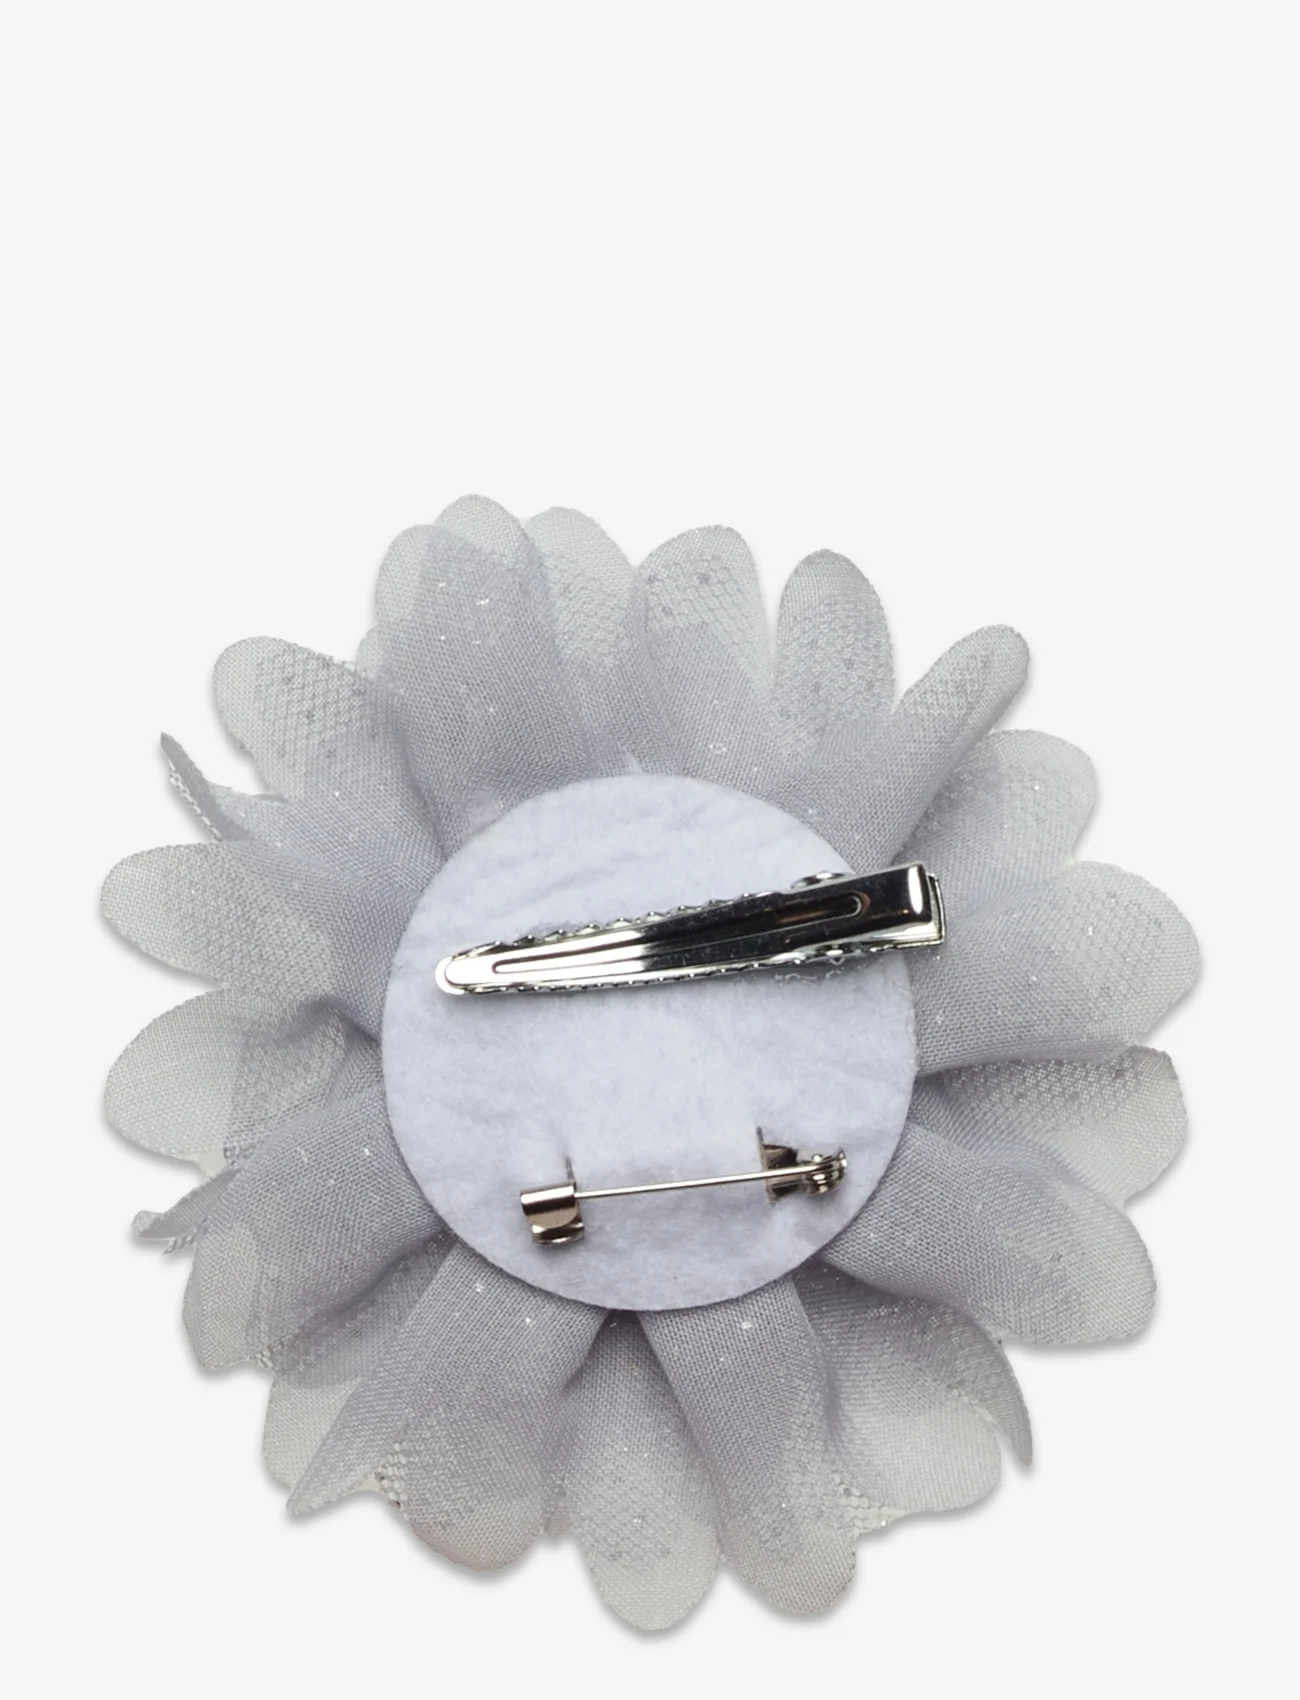 Creamie - Flowerpins 3-Pack - hårspenner - cloud - 1